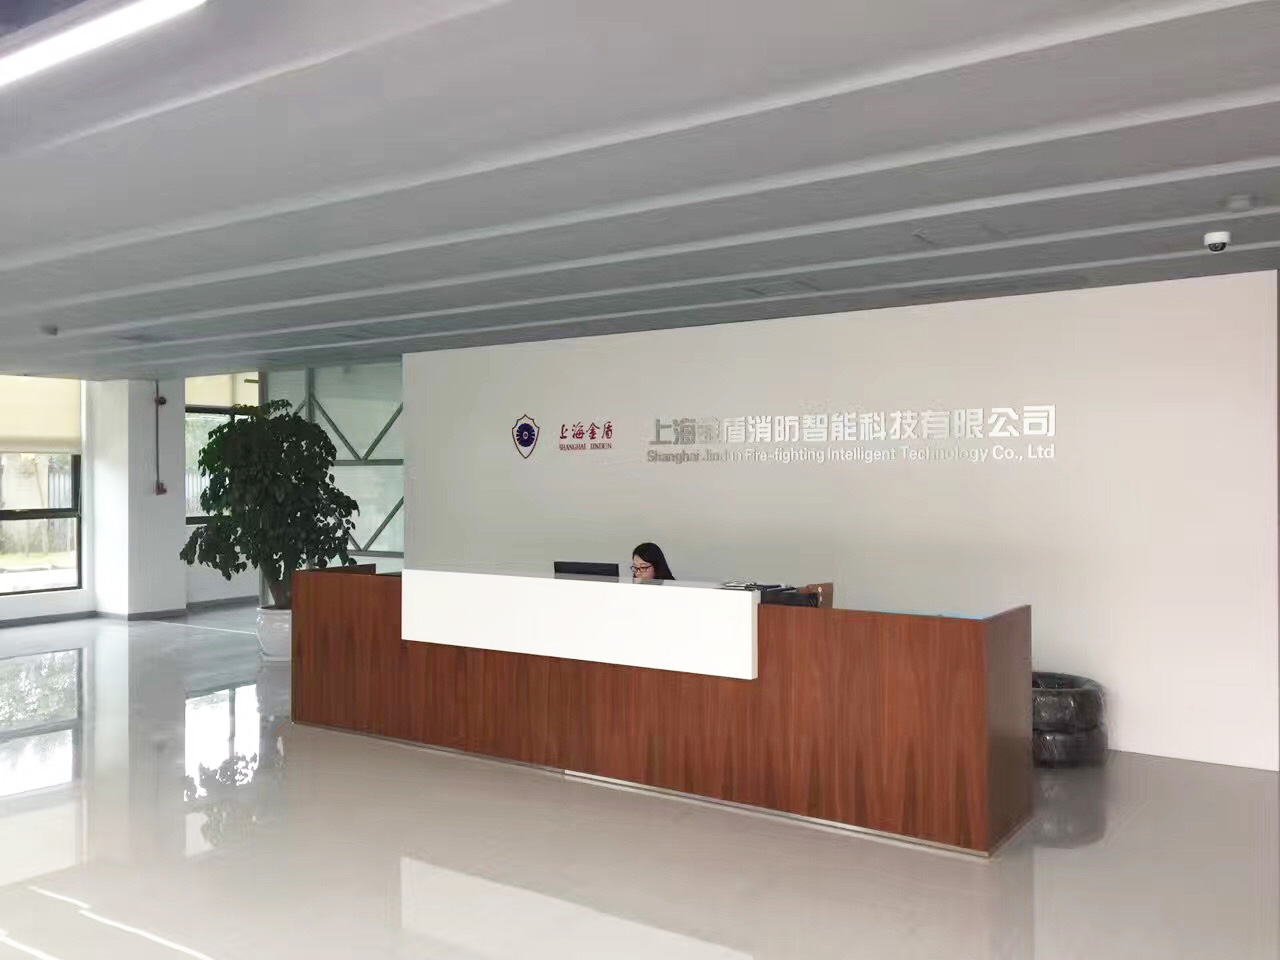 上海金盾消防智能科技有限公司办公楼中央空调安装项目